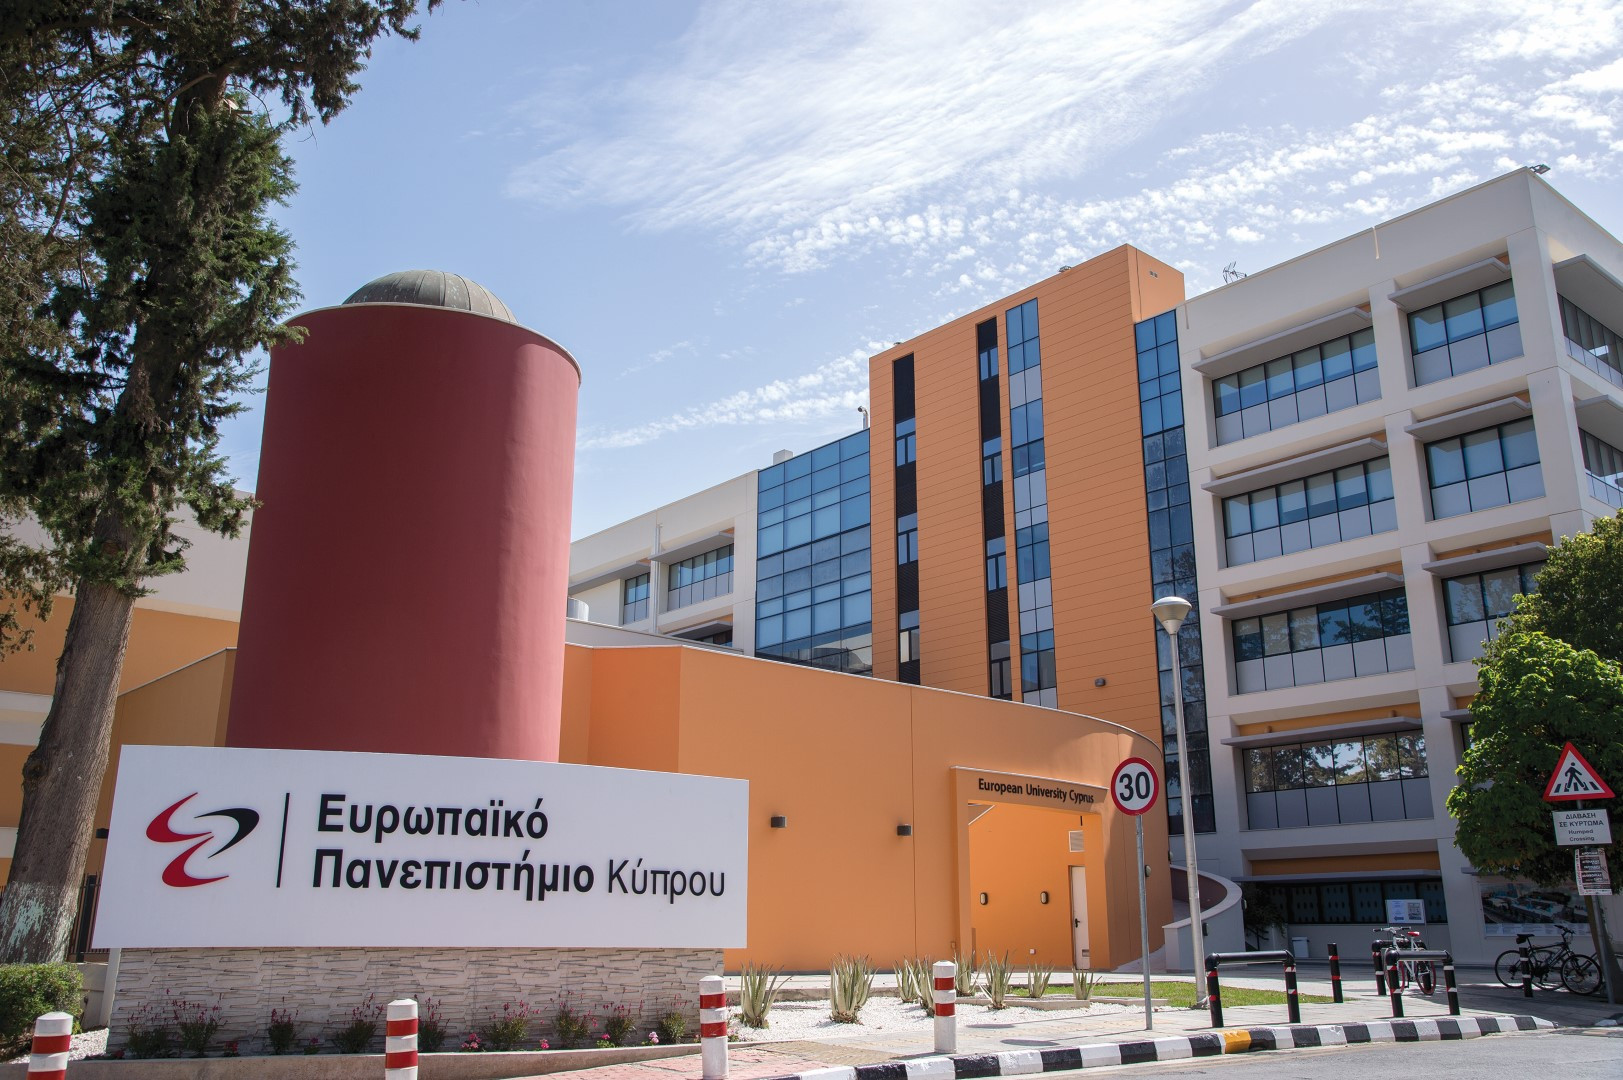 Τα επαγγέλματα στους τομείς υγείας και ζωής που θα κερδίσουν το ενδιαφέρον σου θα τα βρεις στην Κύπρο